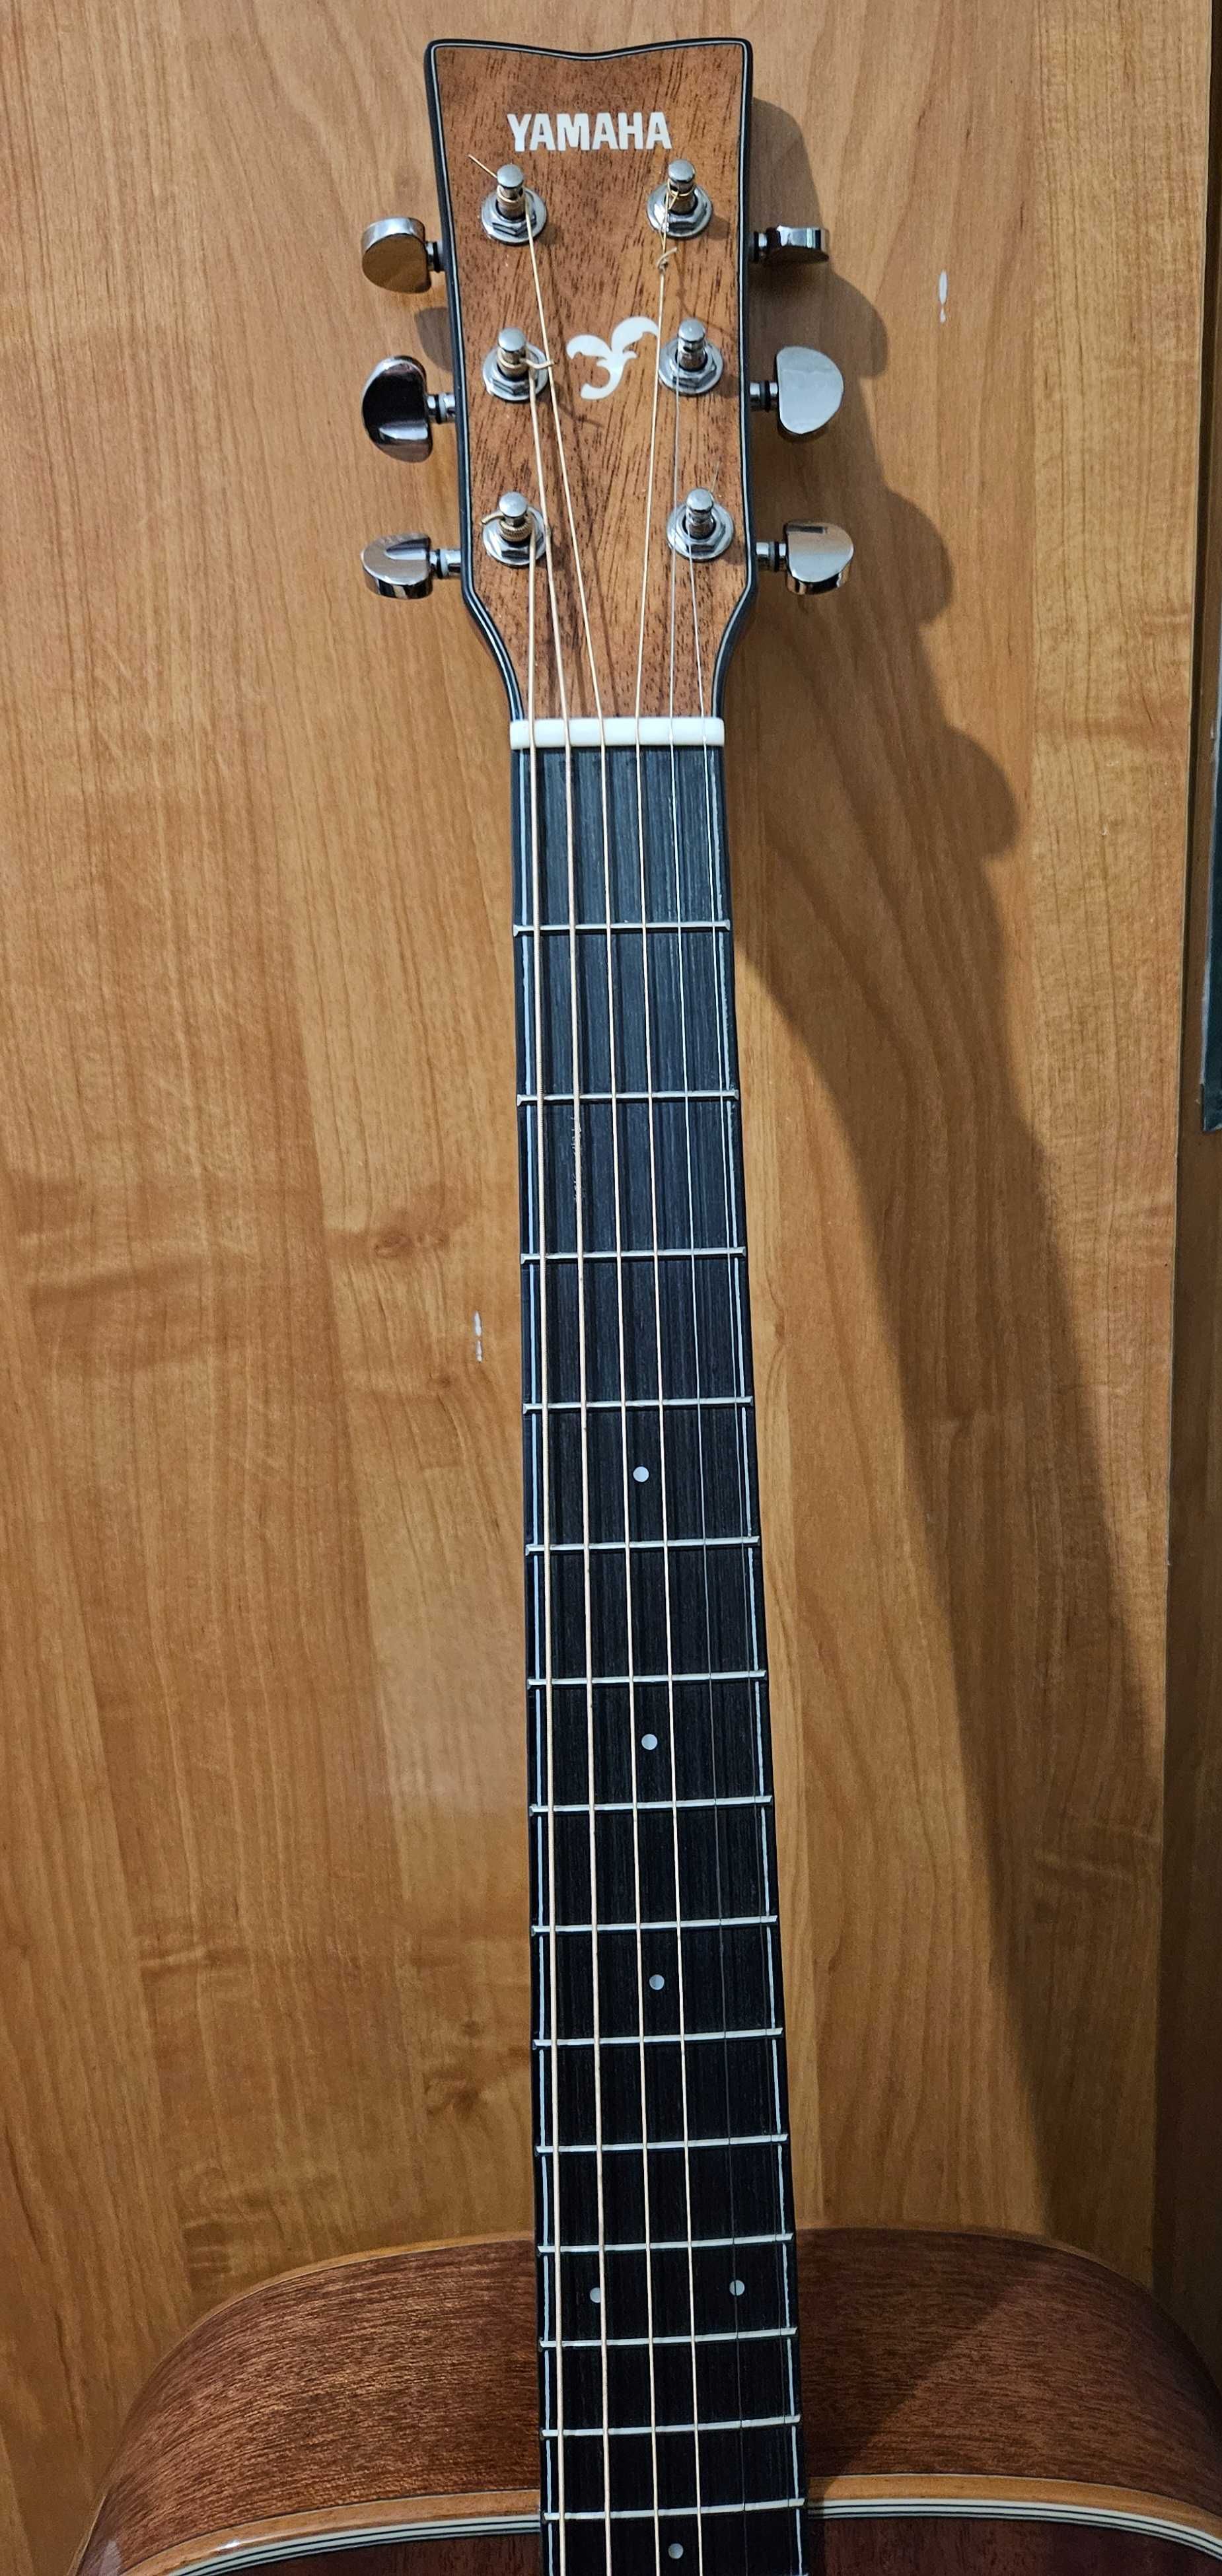 Акустическая гитара Yamaha FG 850. В хорошем состоянии.